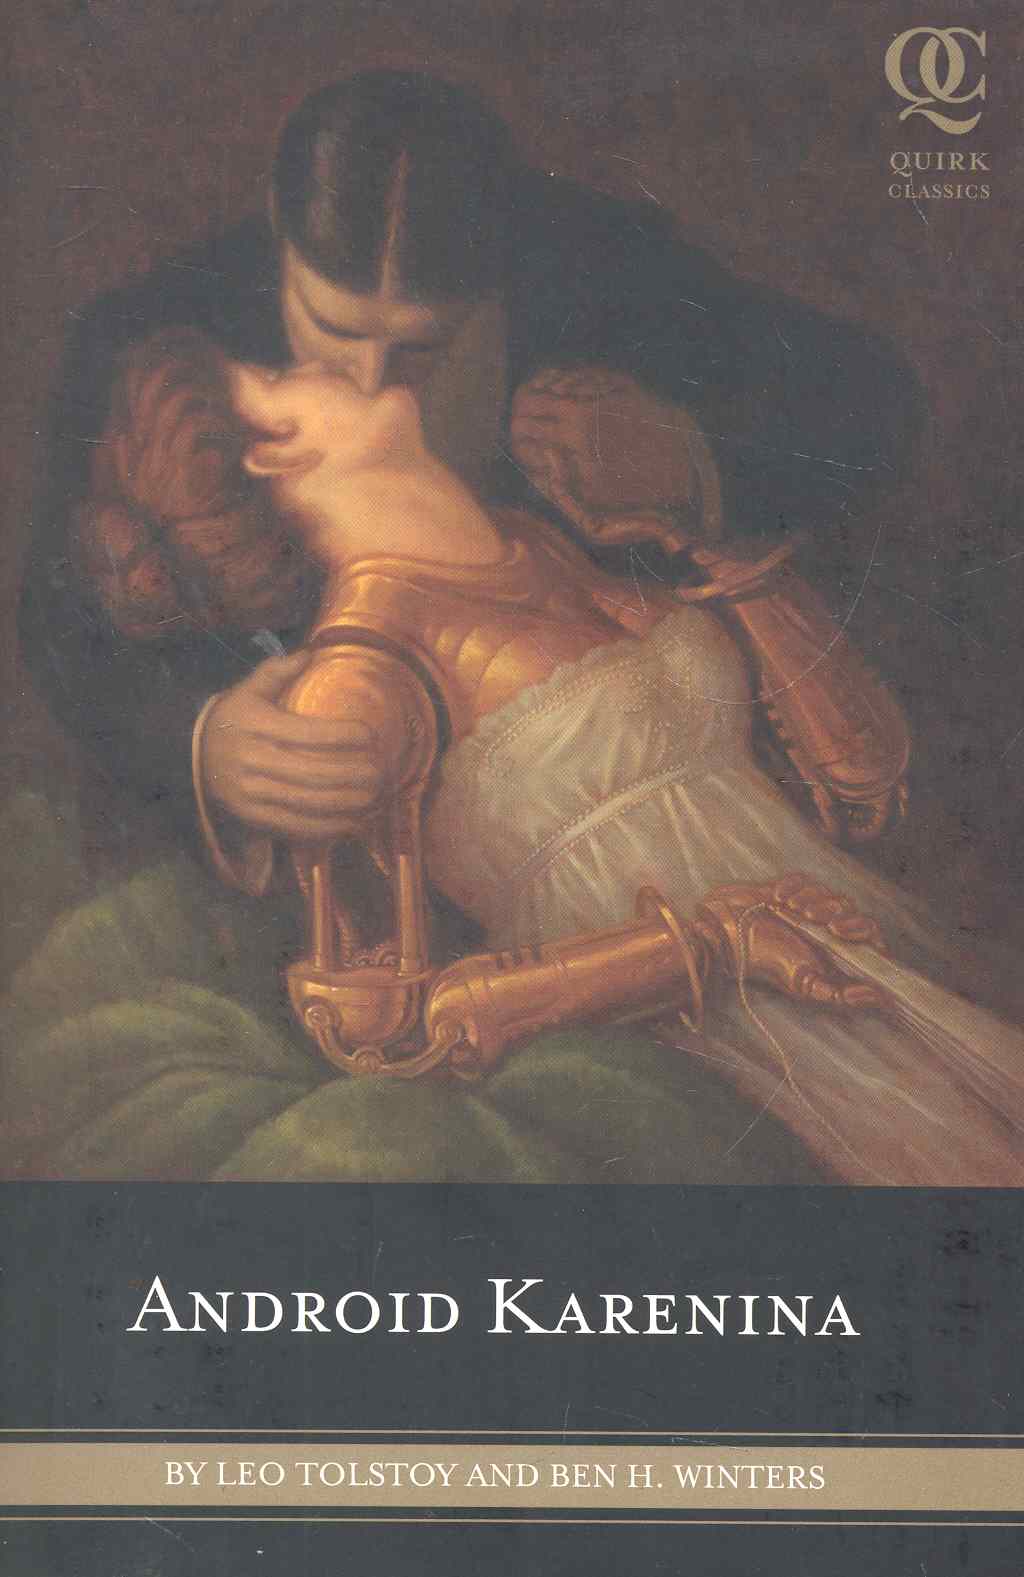 Android Karenina / (мягк) (Quirk Classics). Tolstoy L. (ВБС Логистик) обучающая книга для чтения на английском языке 35 книг набор